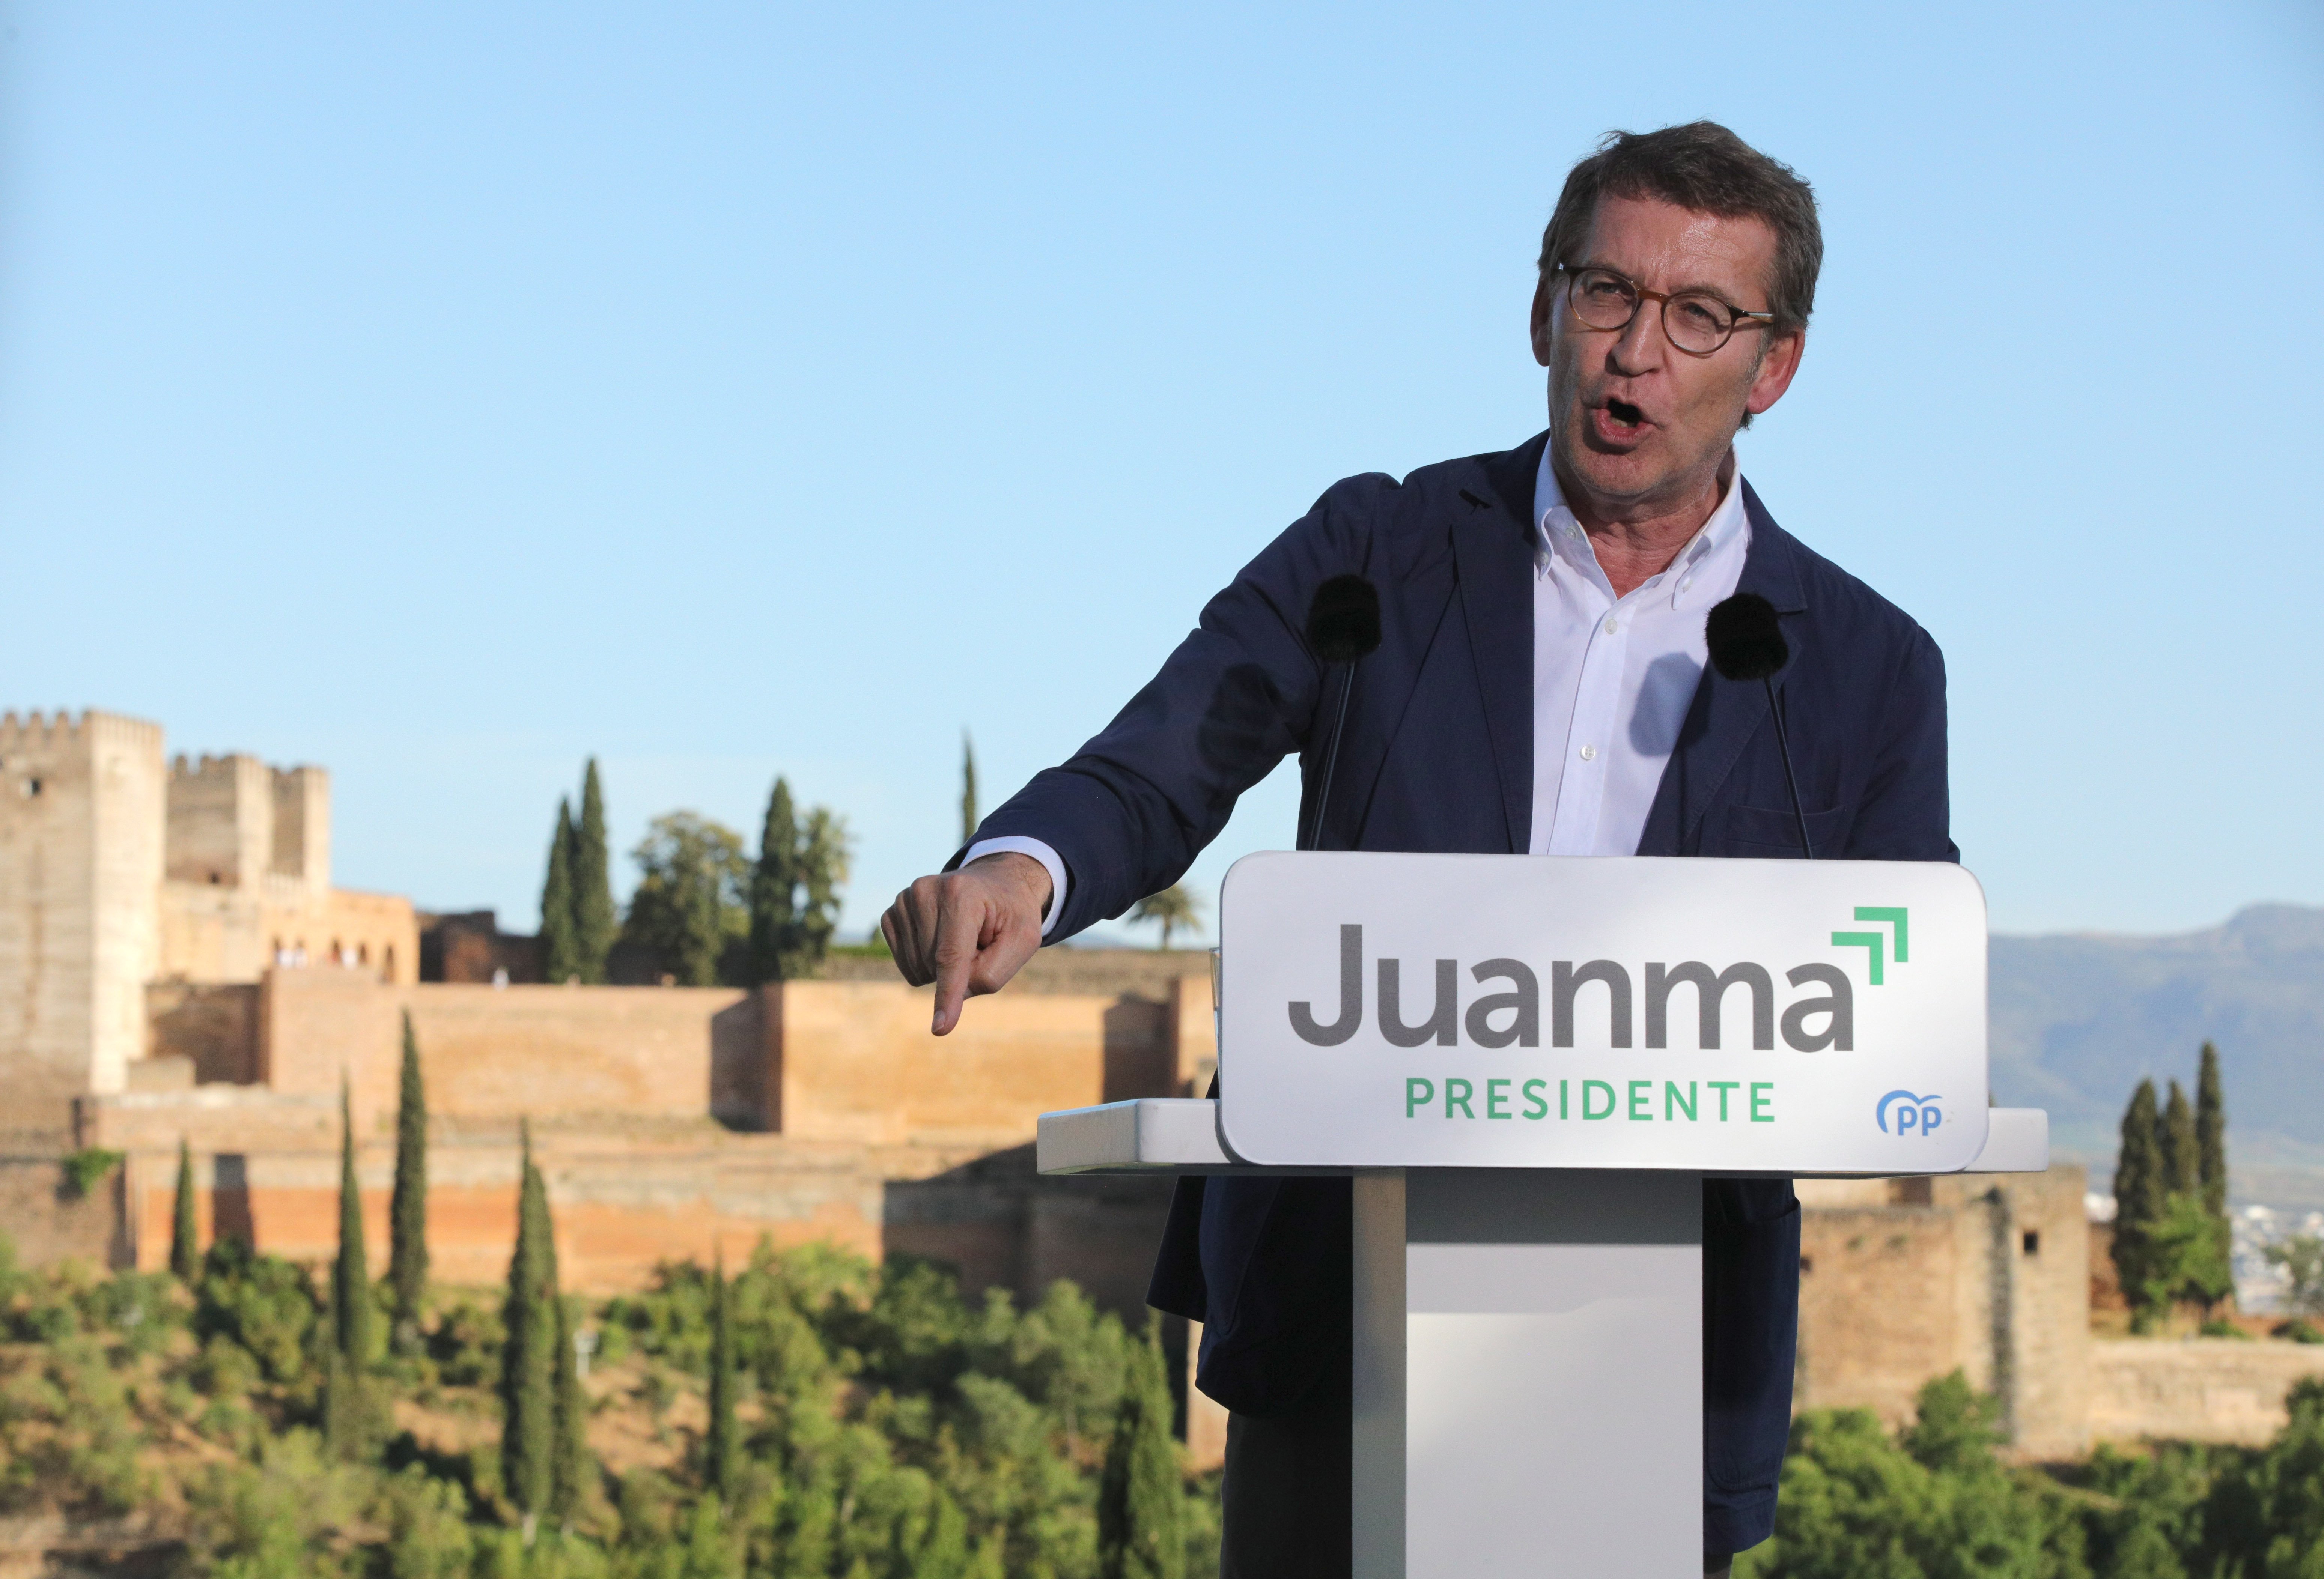 Agra discussió entre PSOE i PP per la posta de sol a l'Alhambra de Granada